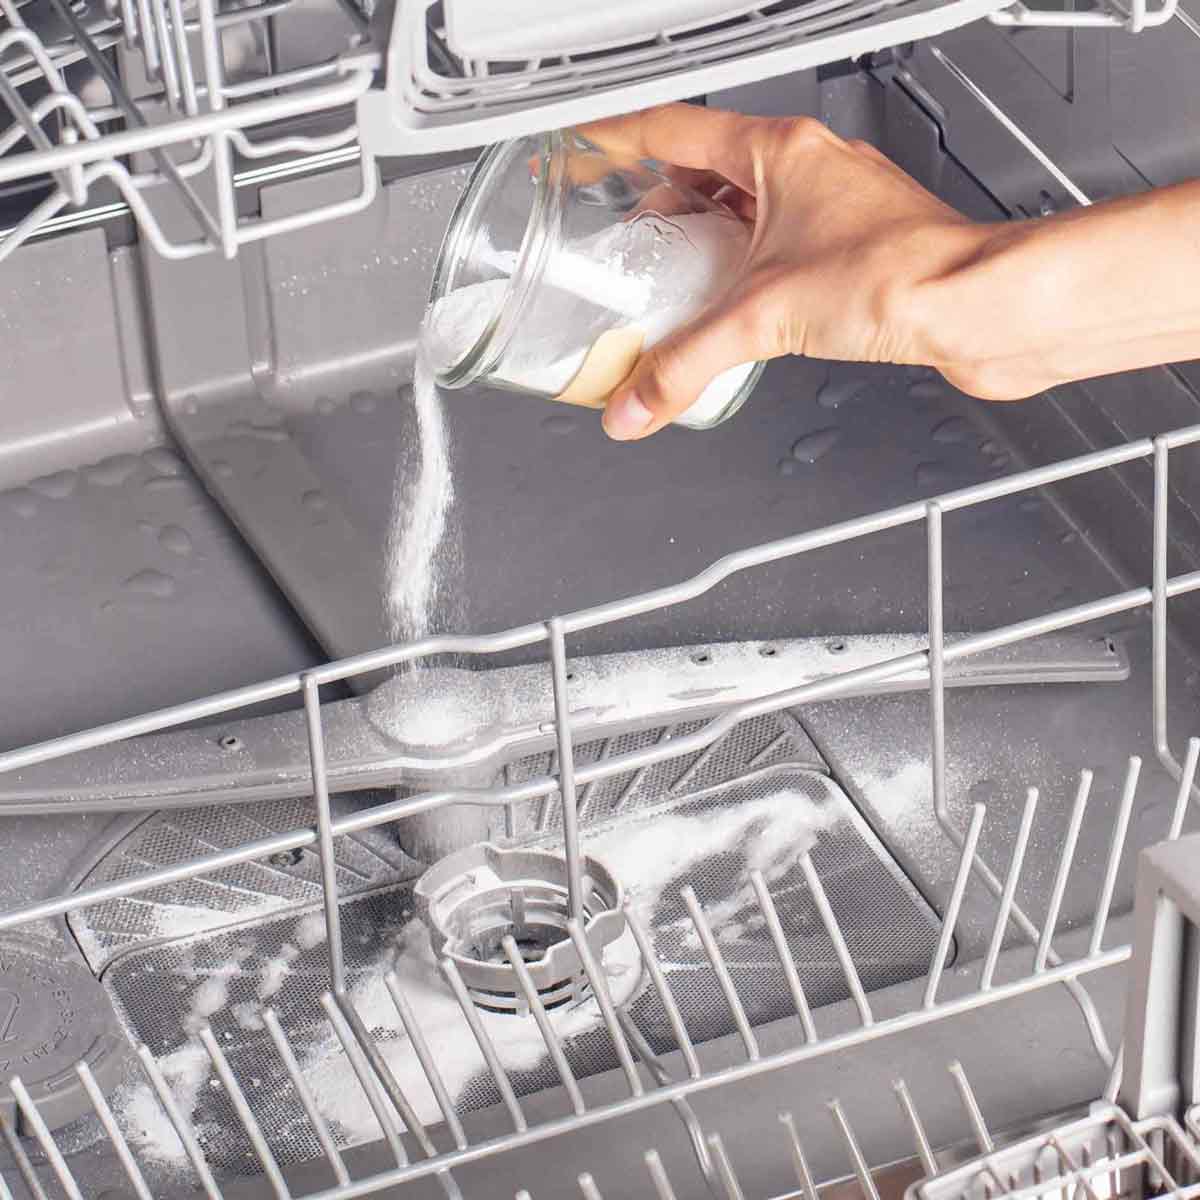 Обзор средств для очистки посудомоечных машин с подробными характеристиками, всеми достоинствами и недостатками.